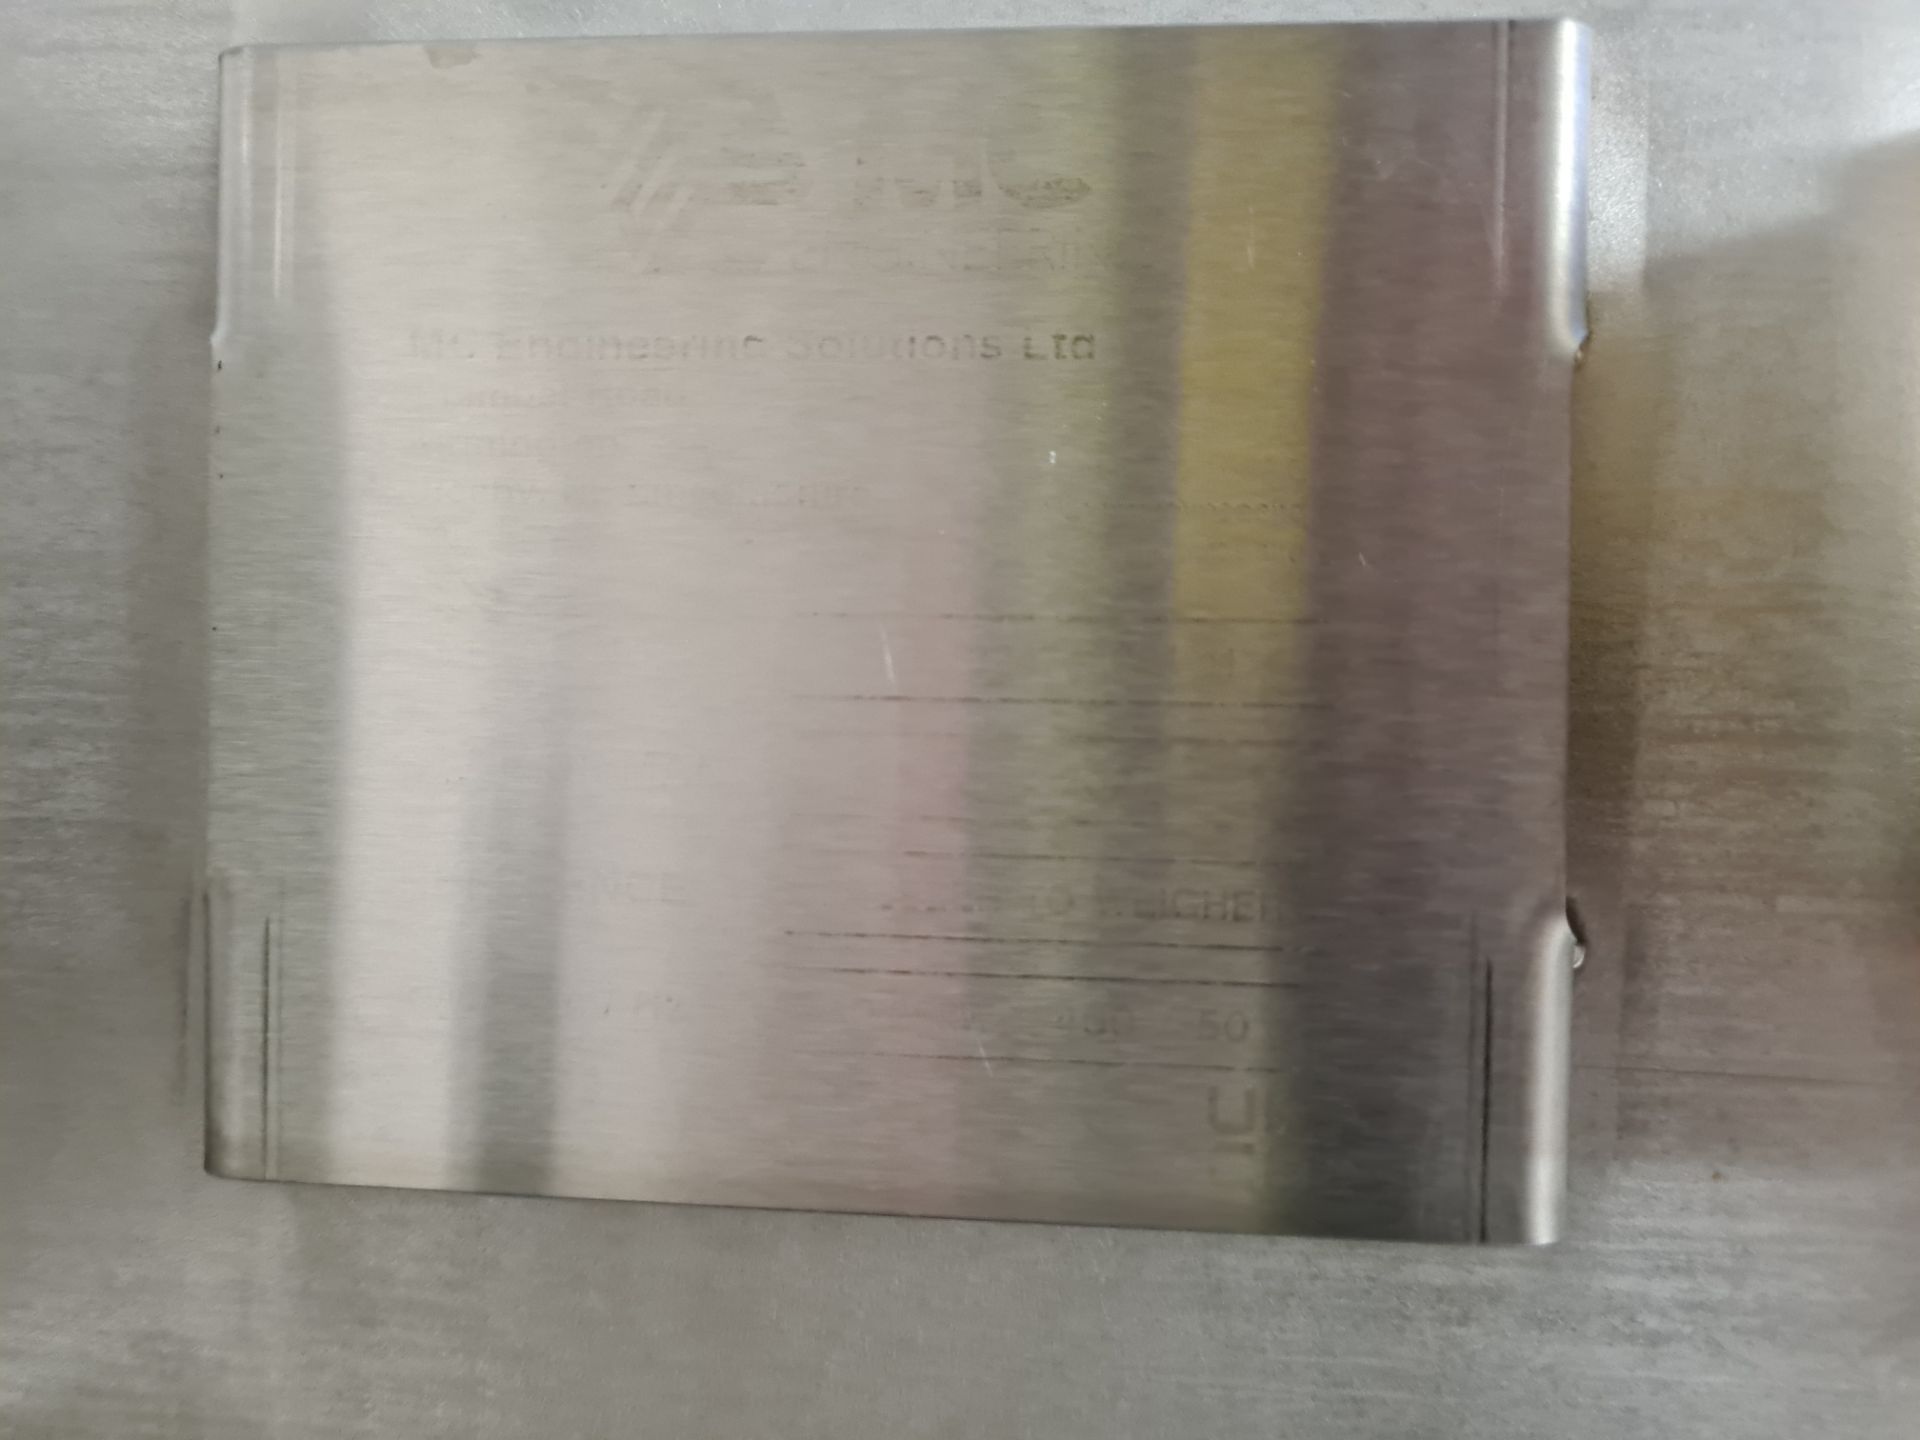 MC Engineering STAINLESS STEEL CASED PLASTIC BELT CONVEYOR, serial no. MC/3247/2021/11, 620mm wide - Image 5 of 5